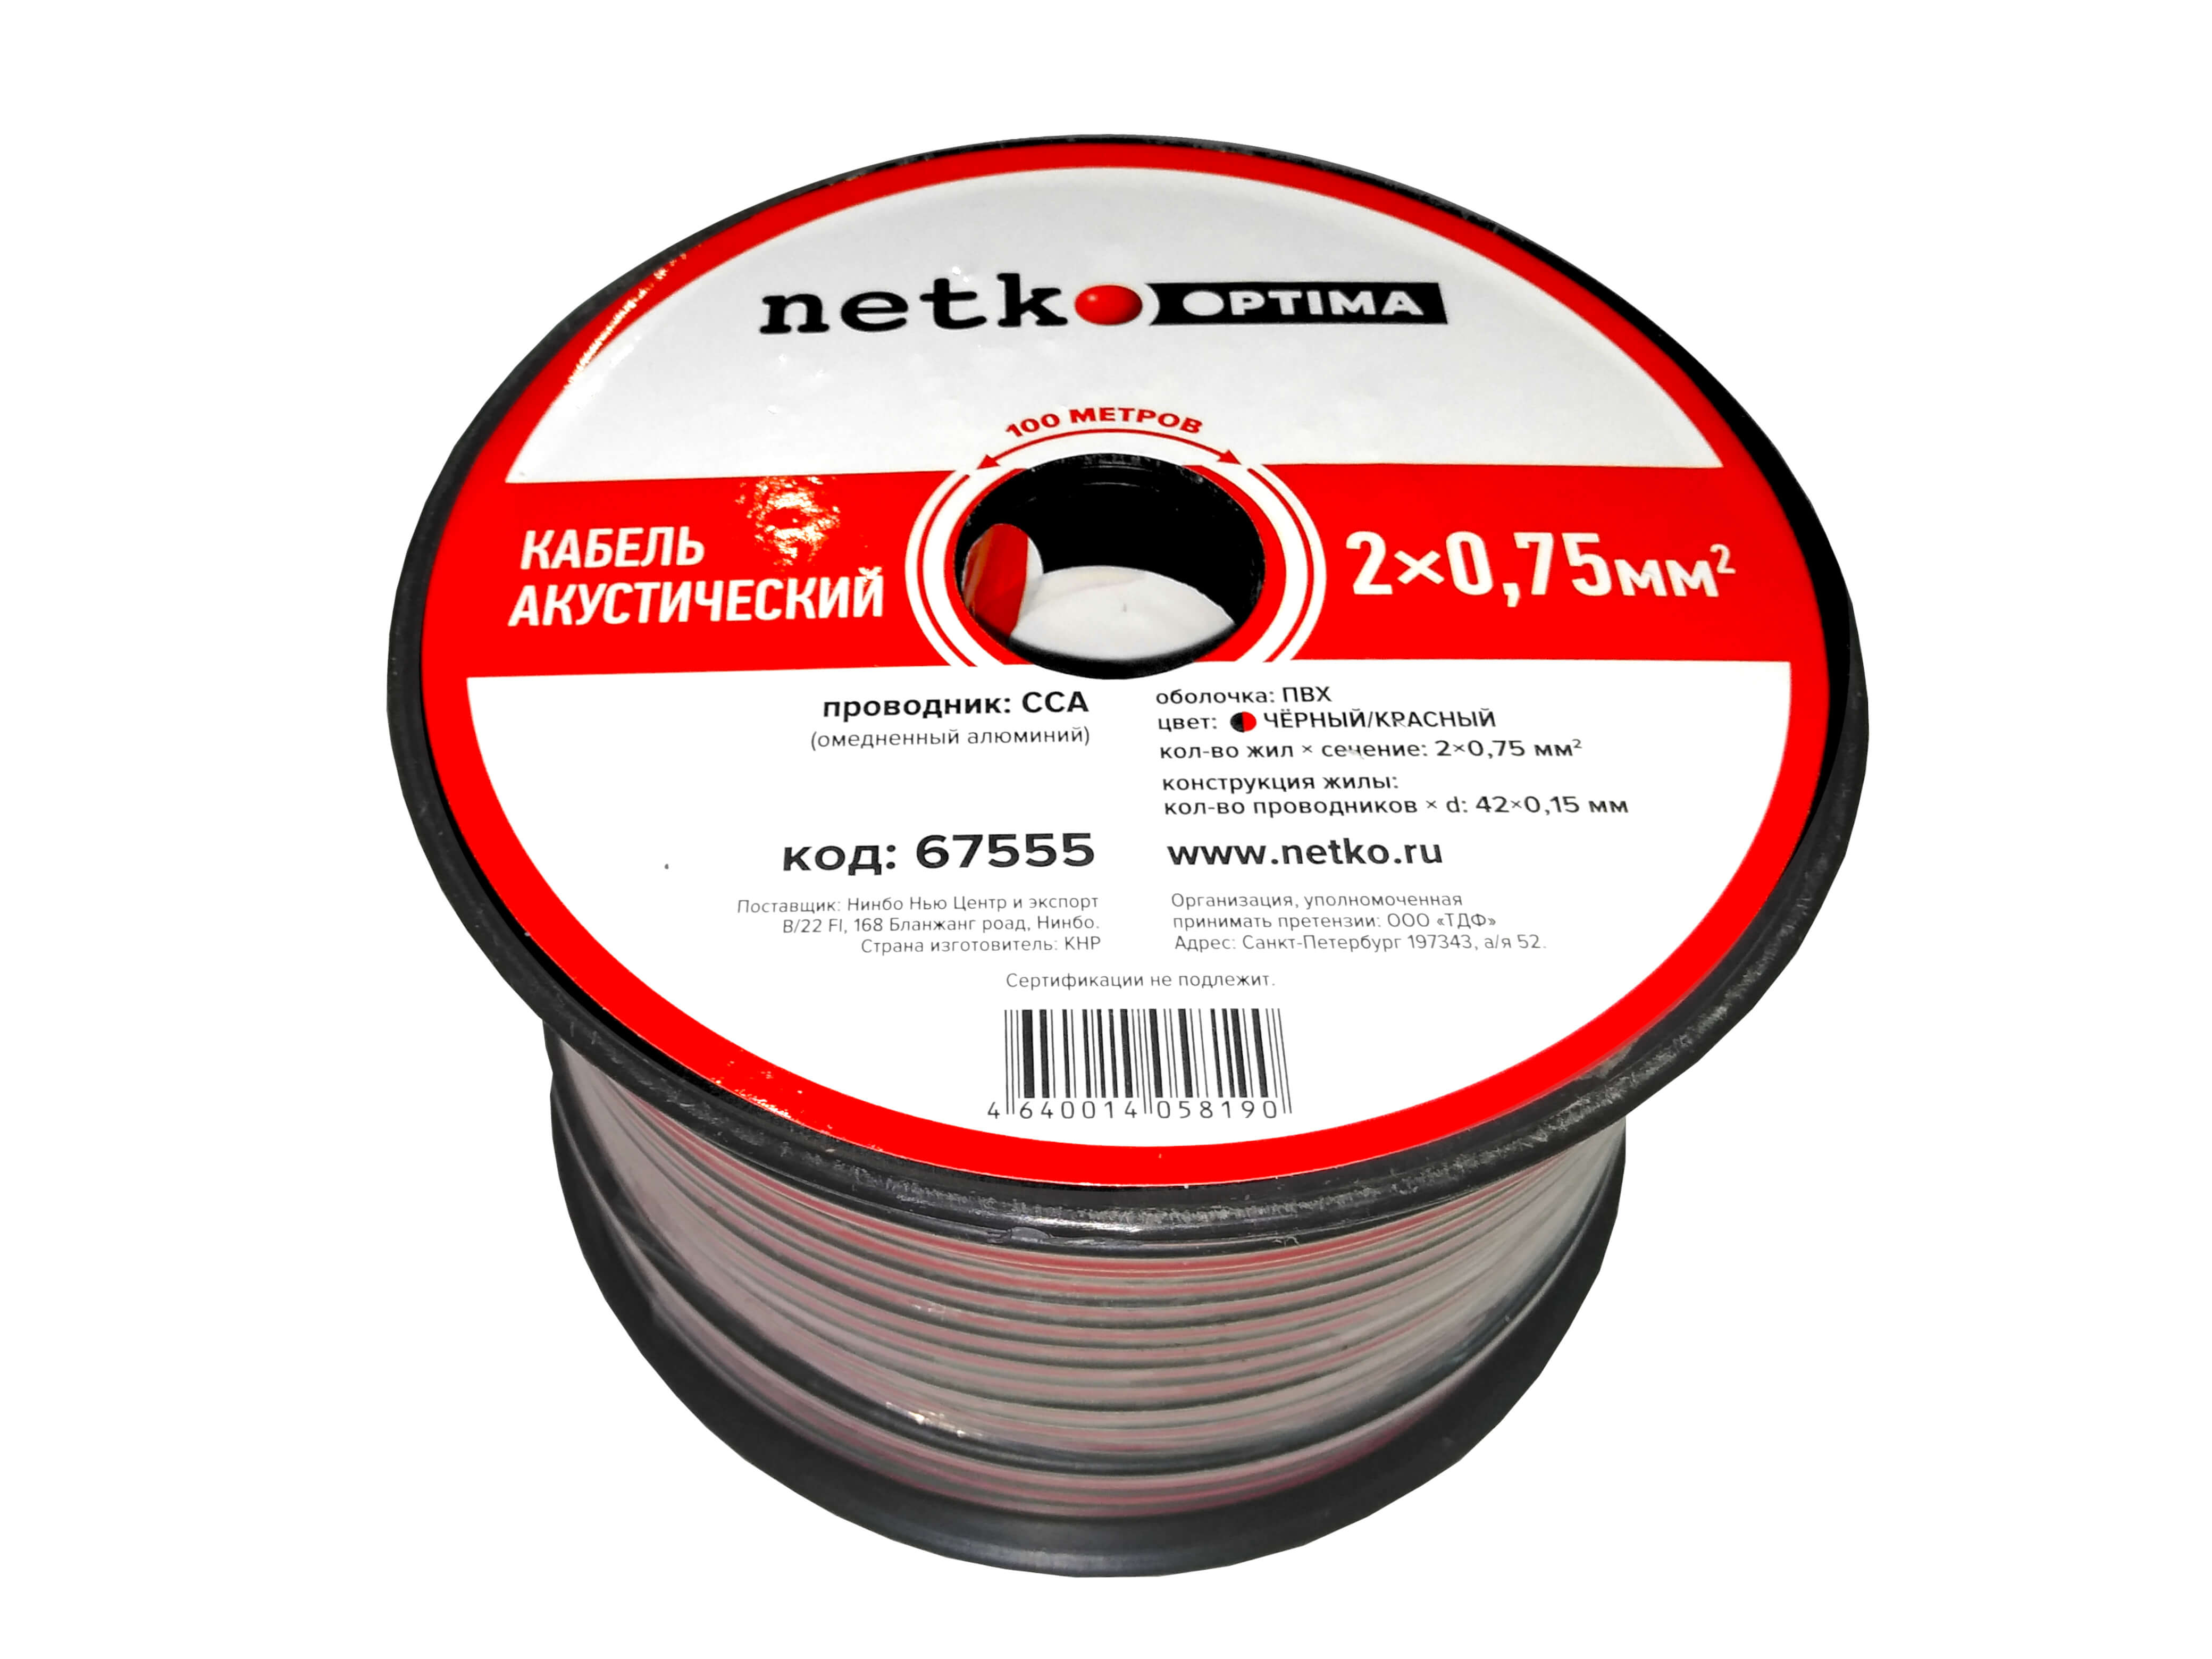 Акустический кабель NETKO N.075.ACC.67555.2X.1/4B, 2x0.75 мм², омедненный алюминий, 100 м, черный/красный (67555)